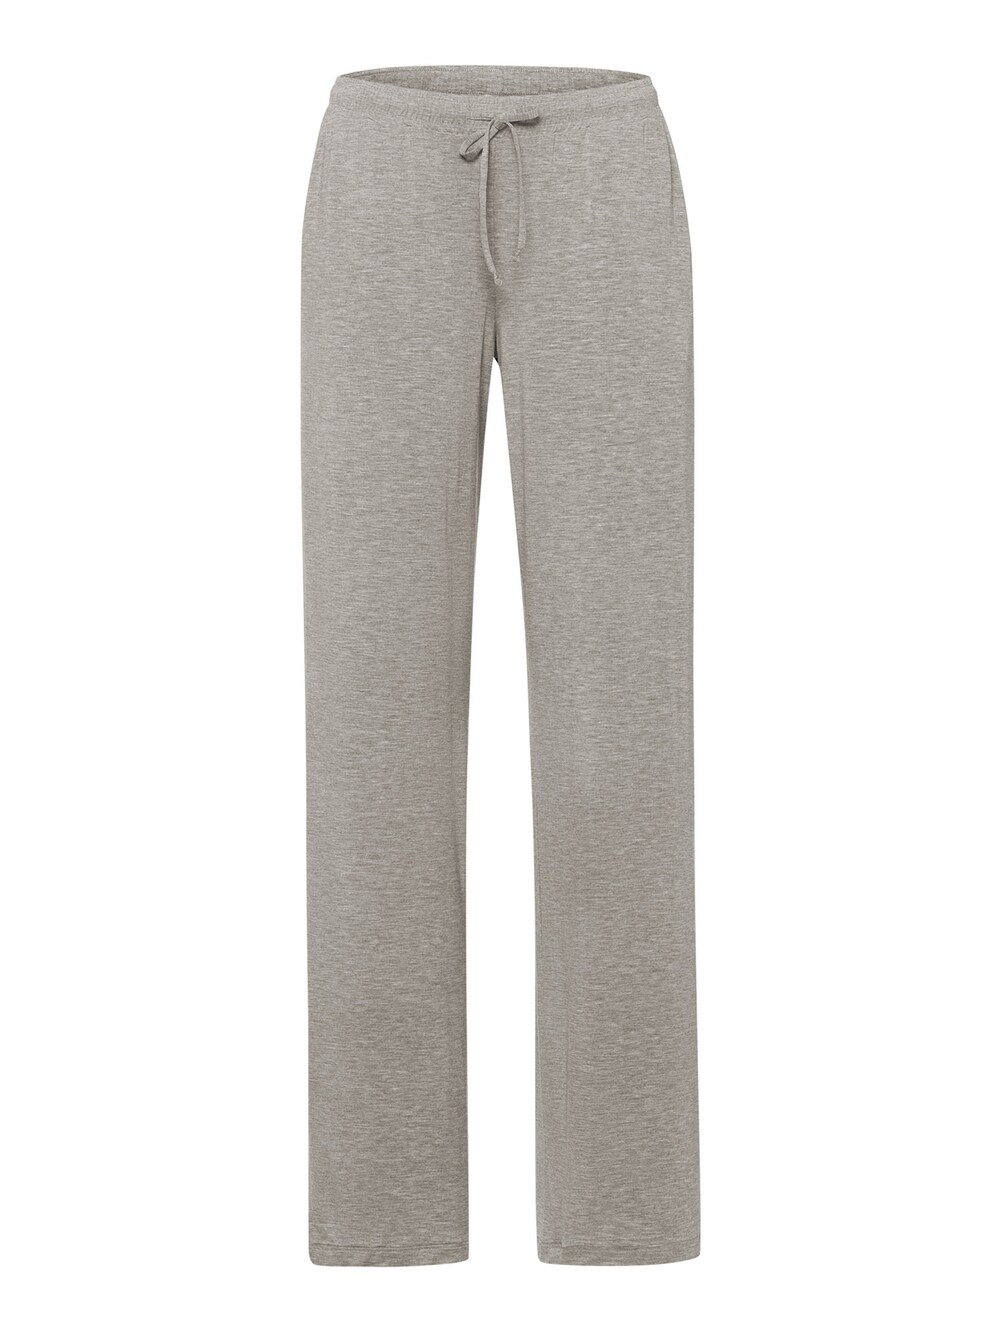 Пижамные штаны Hanro Natural Elegance, пестрый серый